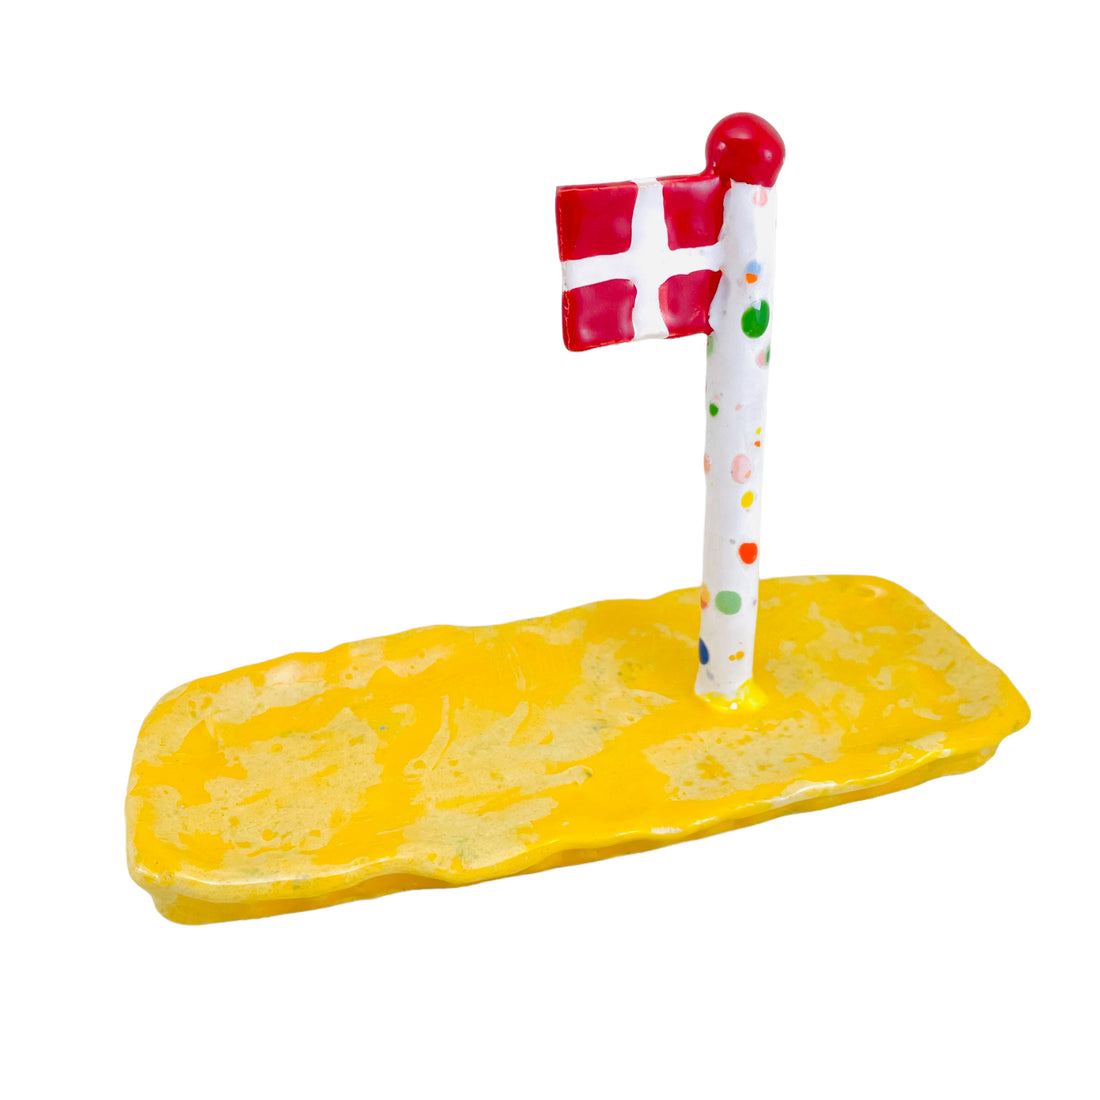 Harlekin flag på bred fod som også er et lille fad til slik eller småkager